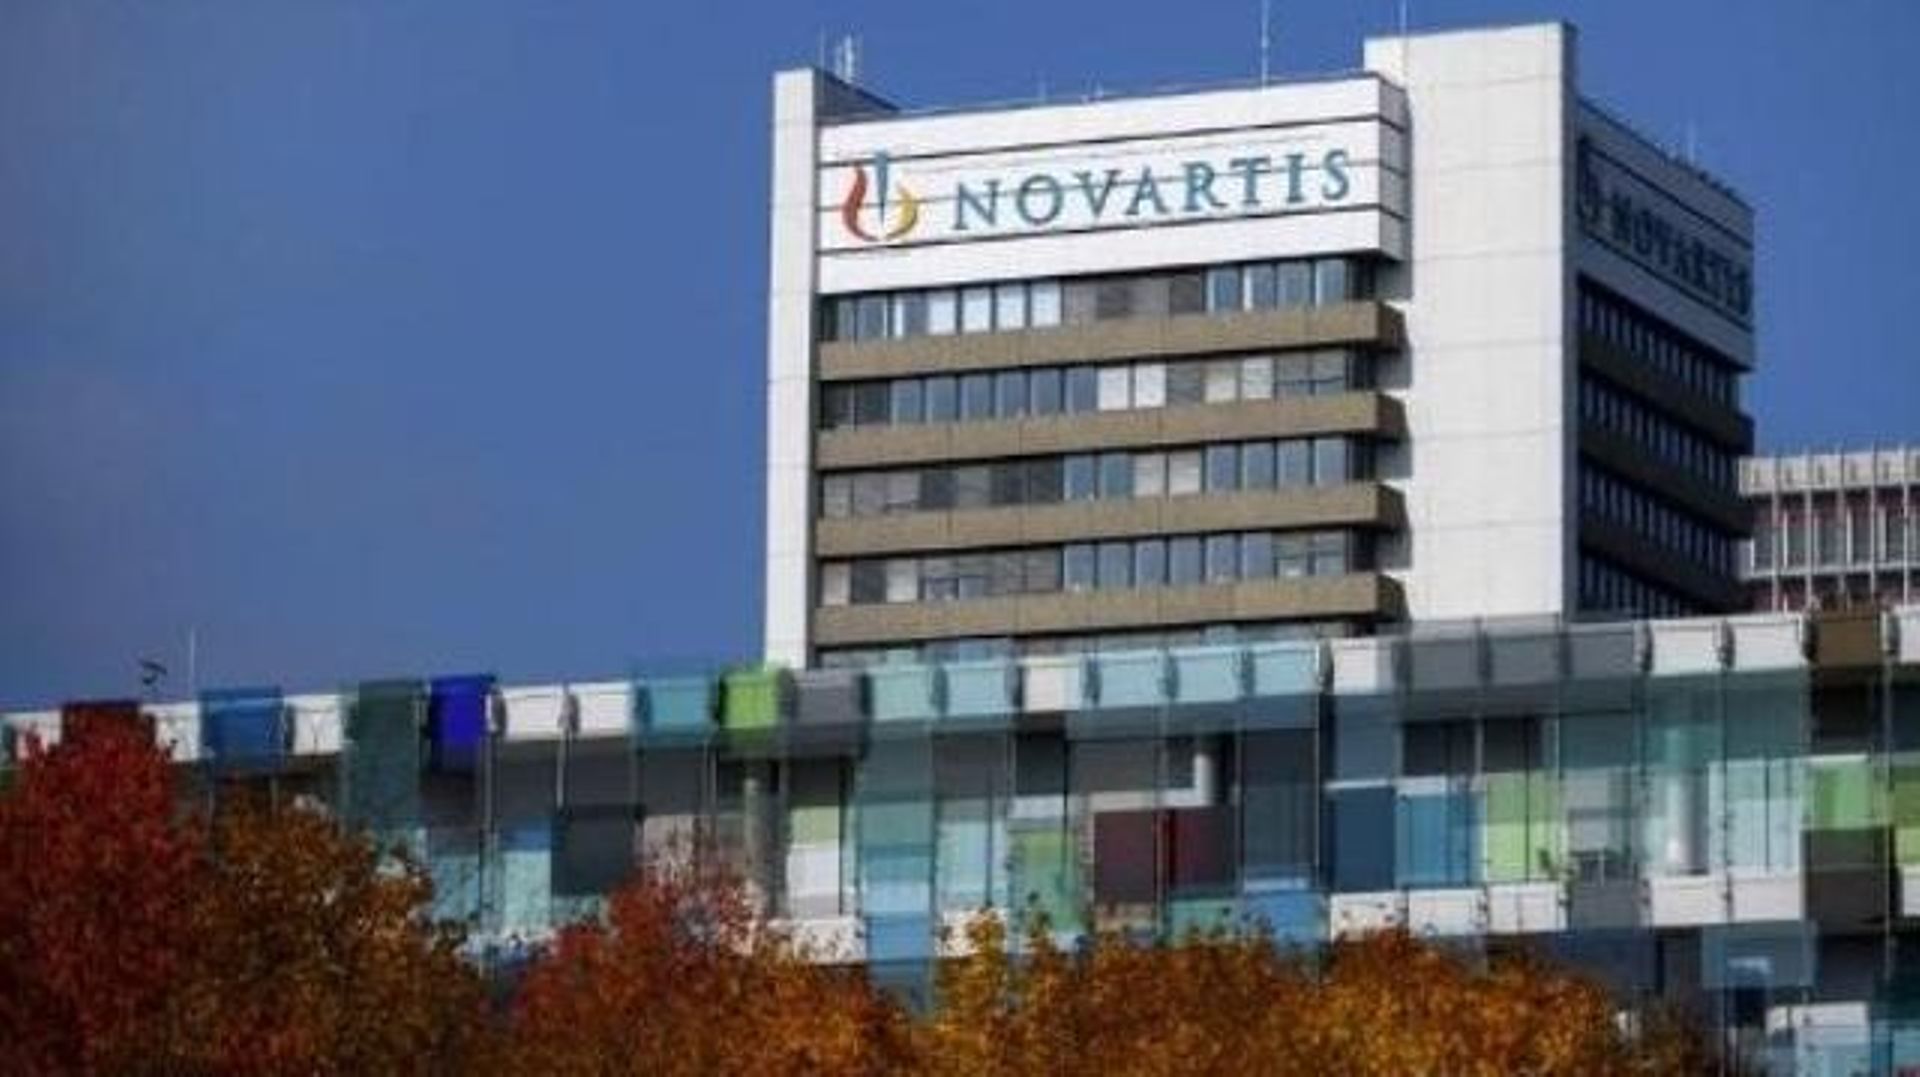 Novartis: résultats positifs en phase II pour un antiviral anti-Covid